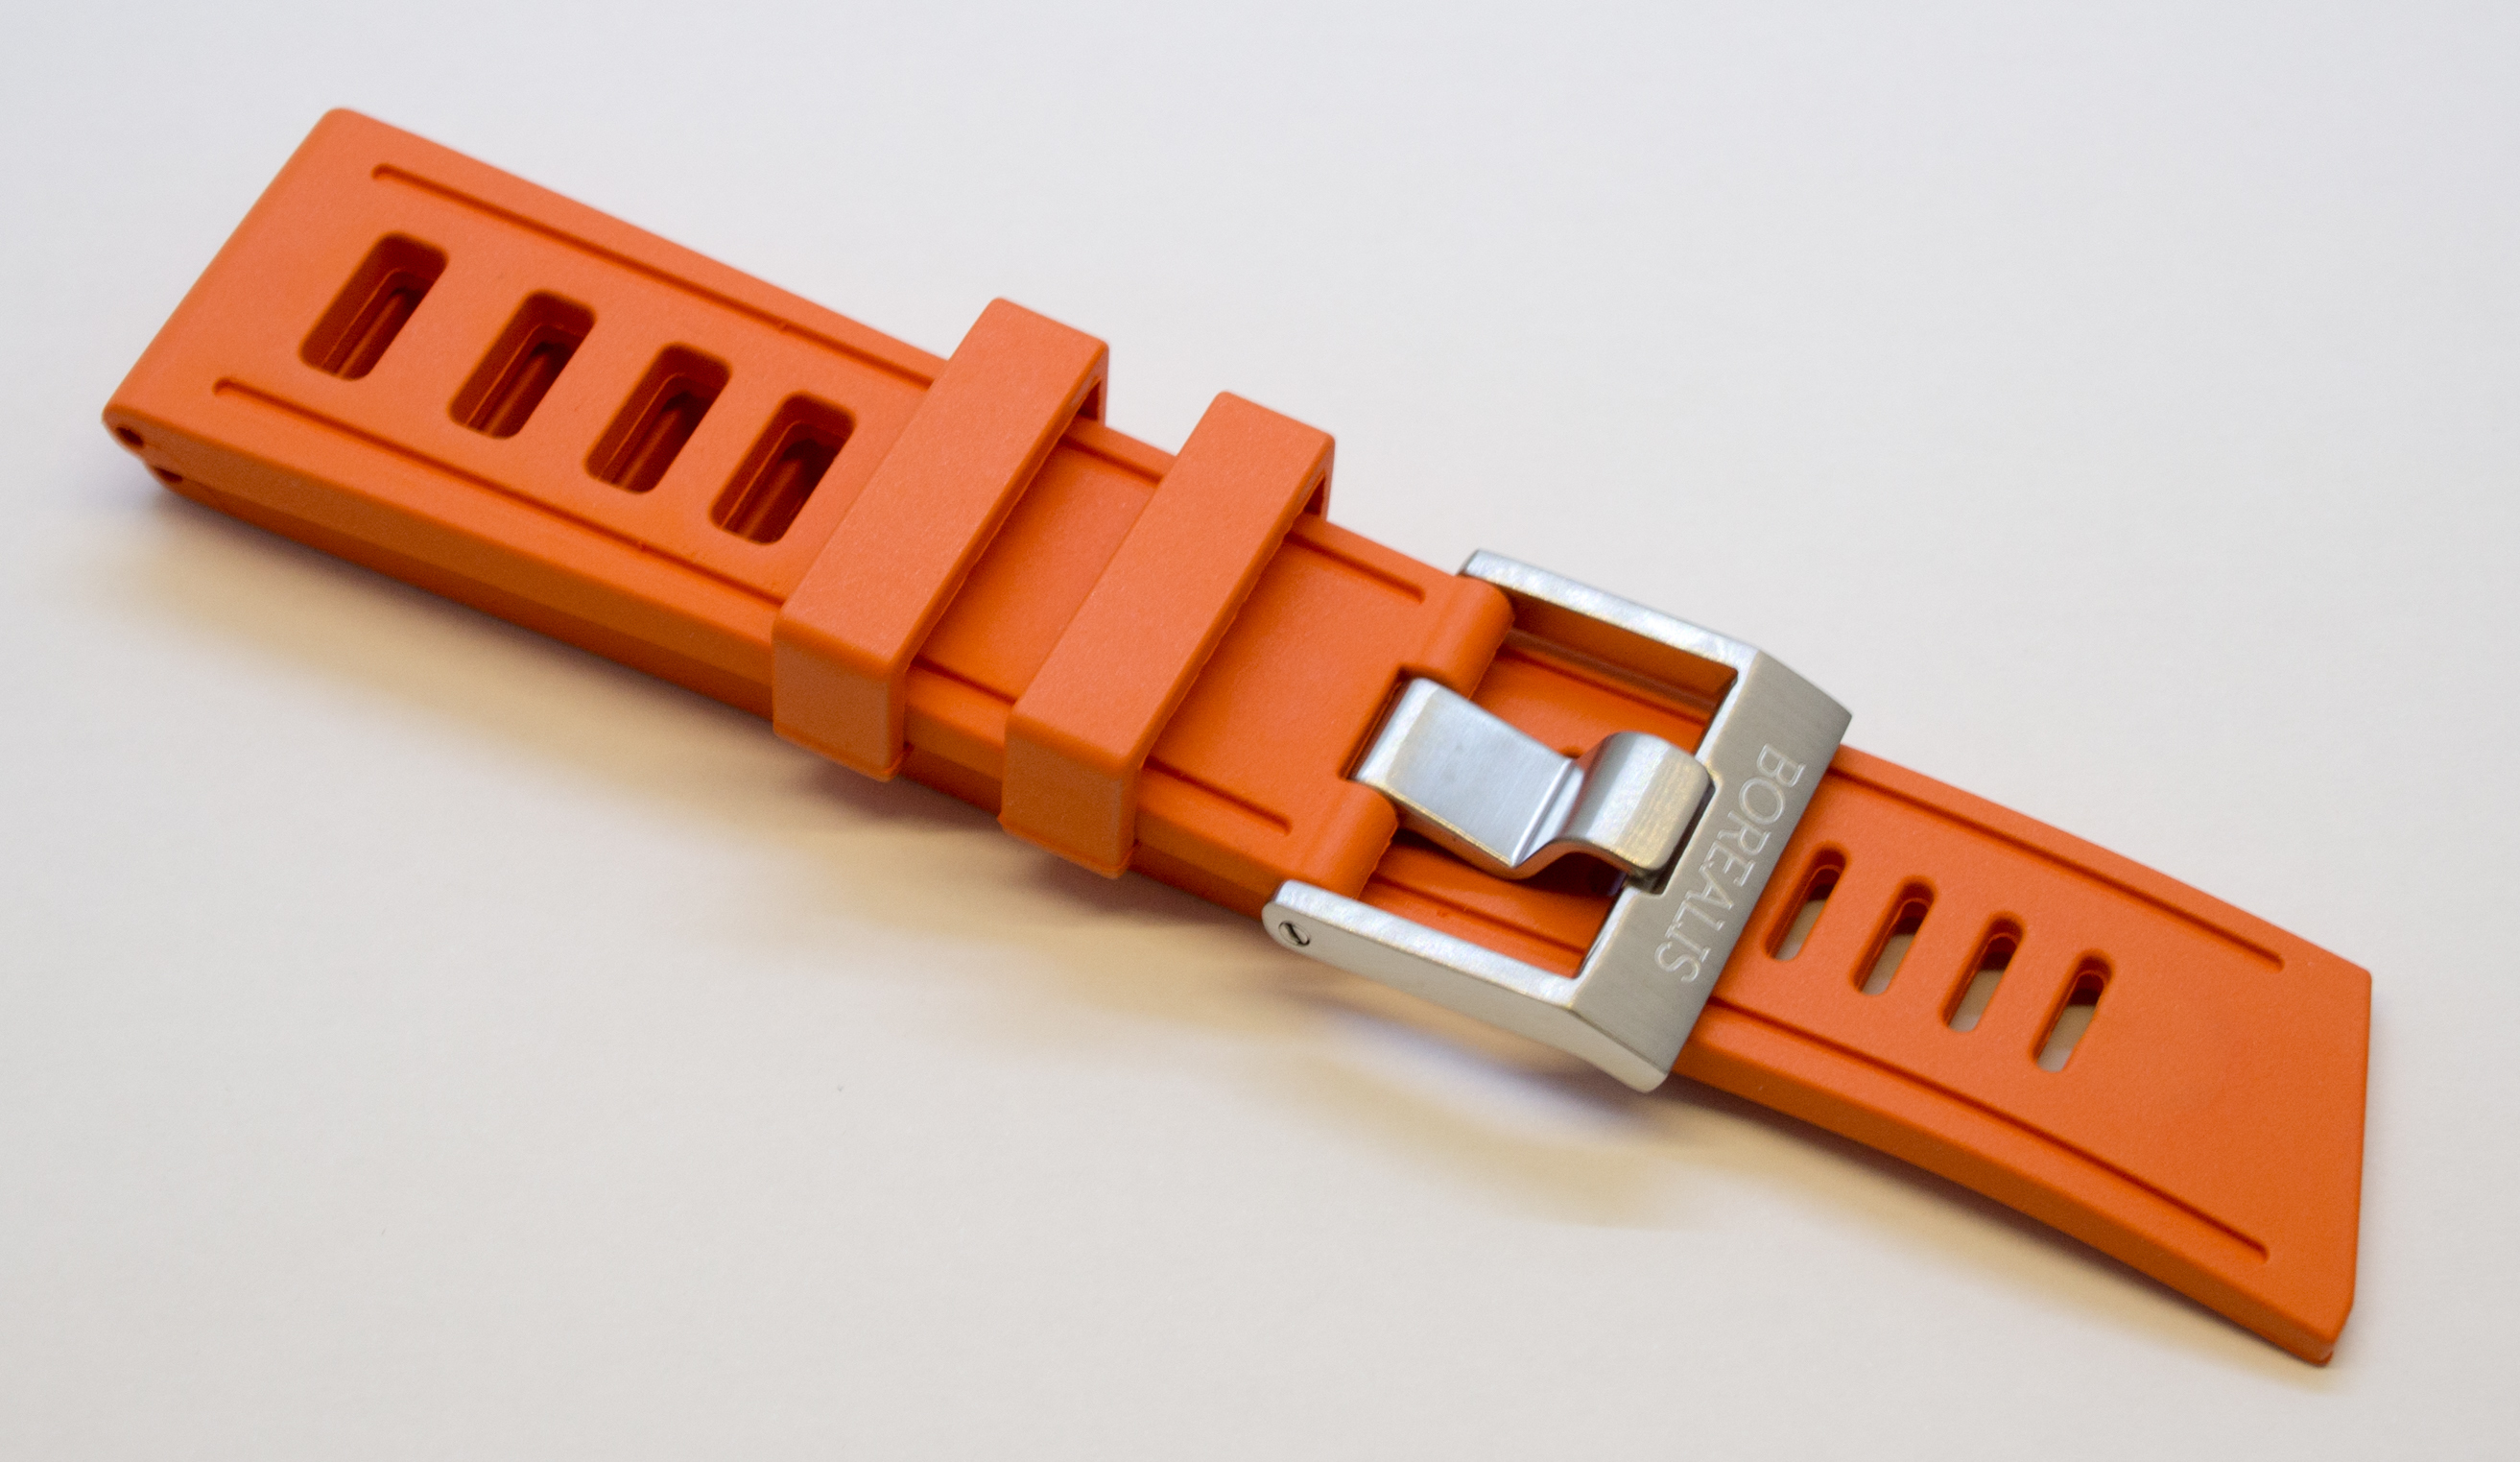 Rubber straps. Ремешок для 684830 41 59 06 Rubber. Swatch Omega Rubber Strap. Ремешок Isofrane на часах. Porsche Design p6320 p6340 compatible Rubber watch Band Strap.